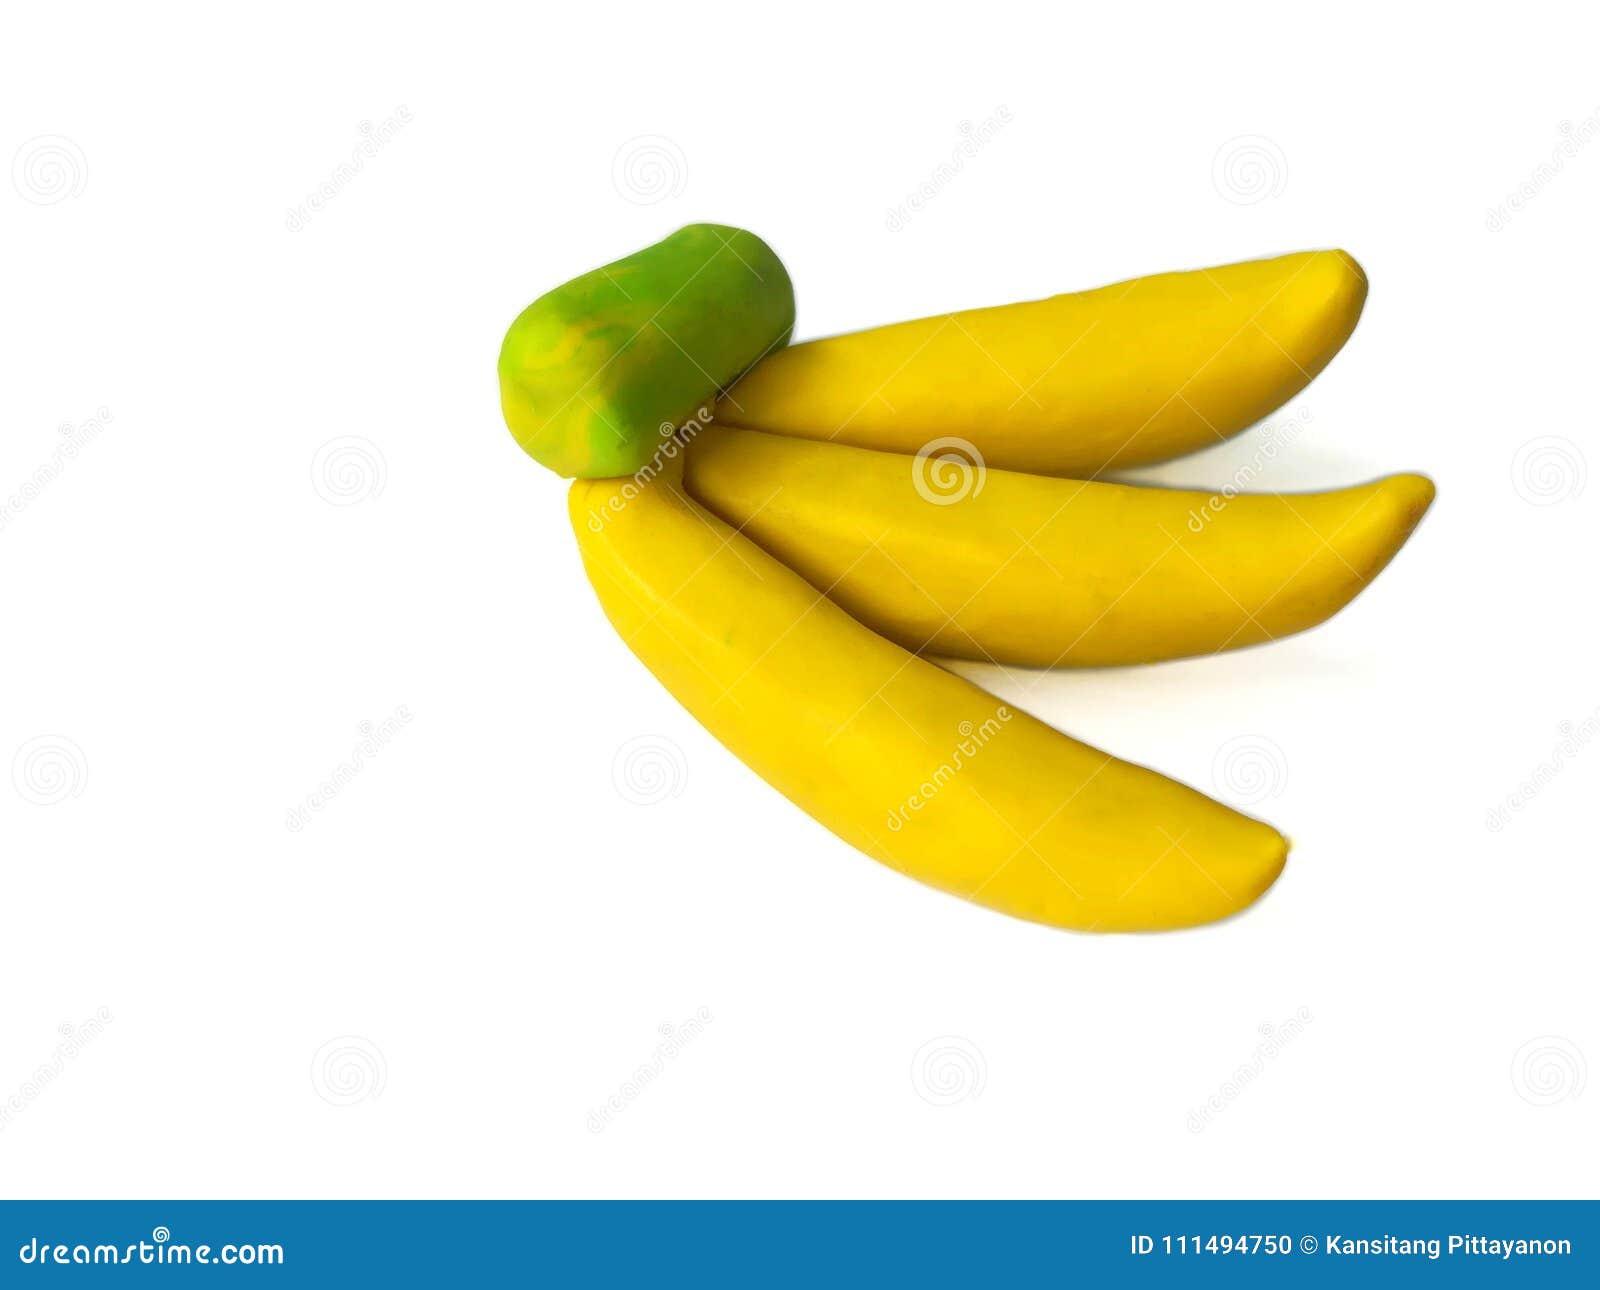 Банан из пластилина